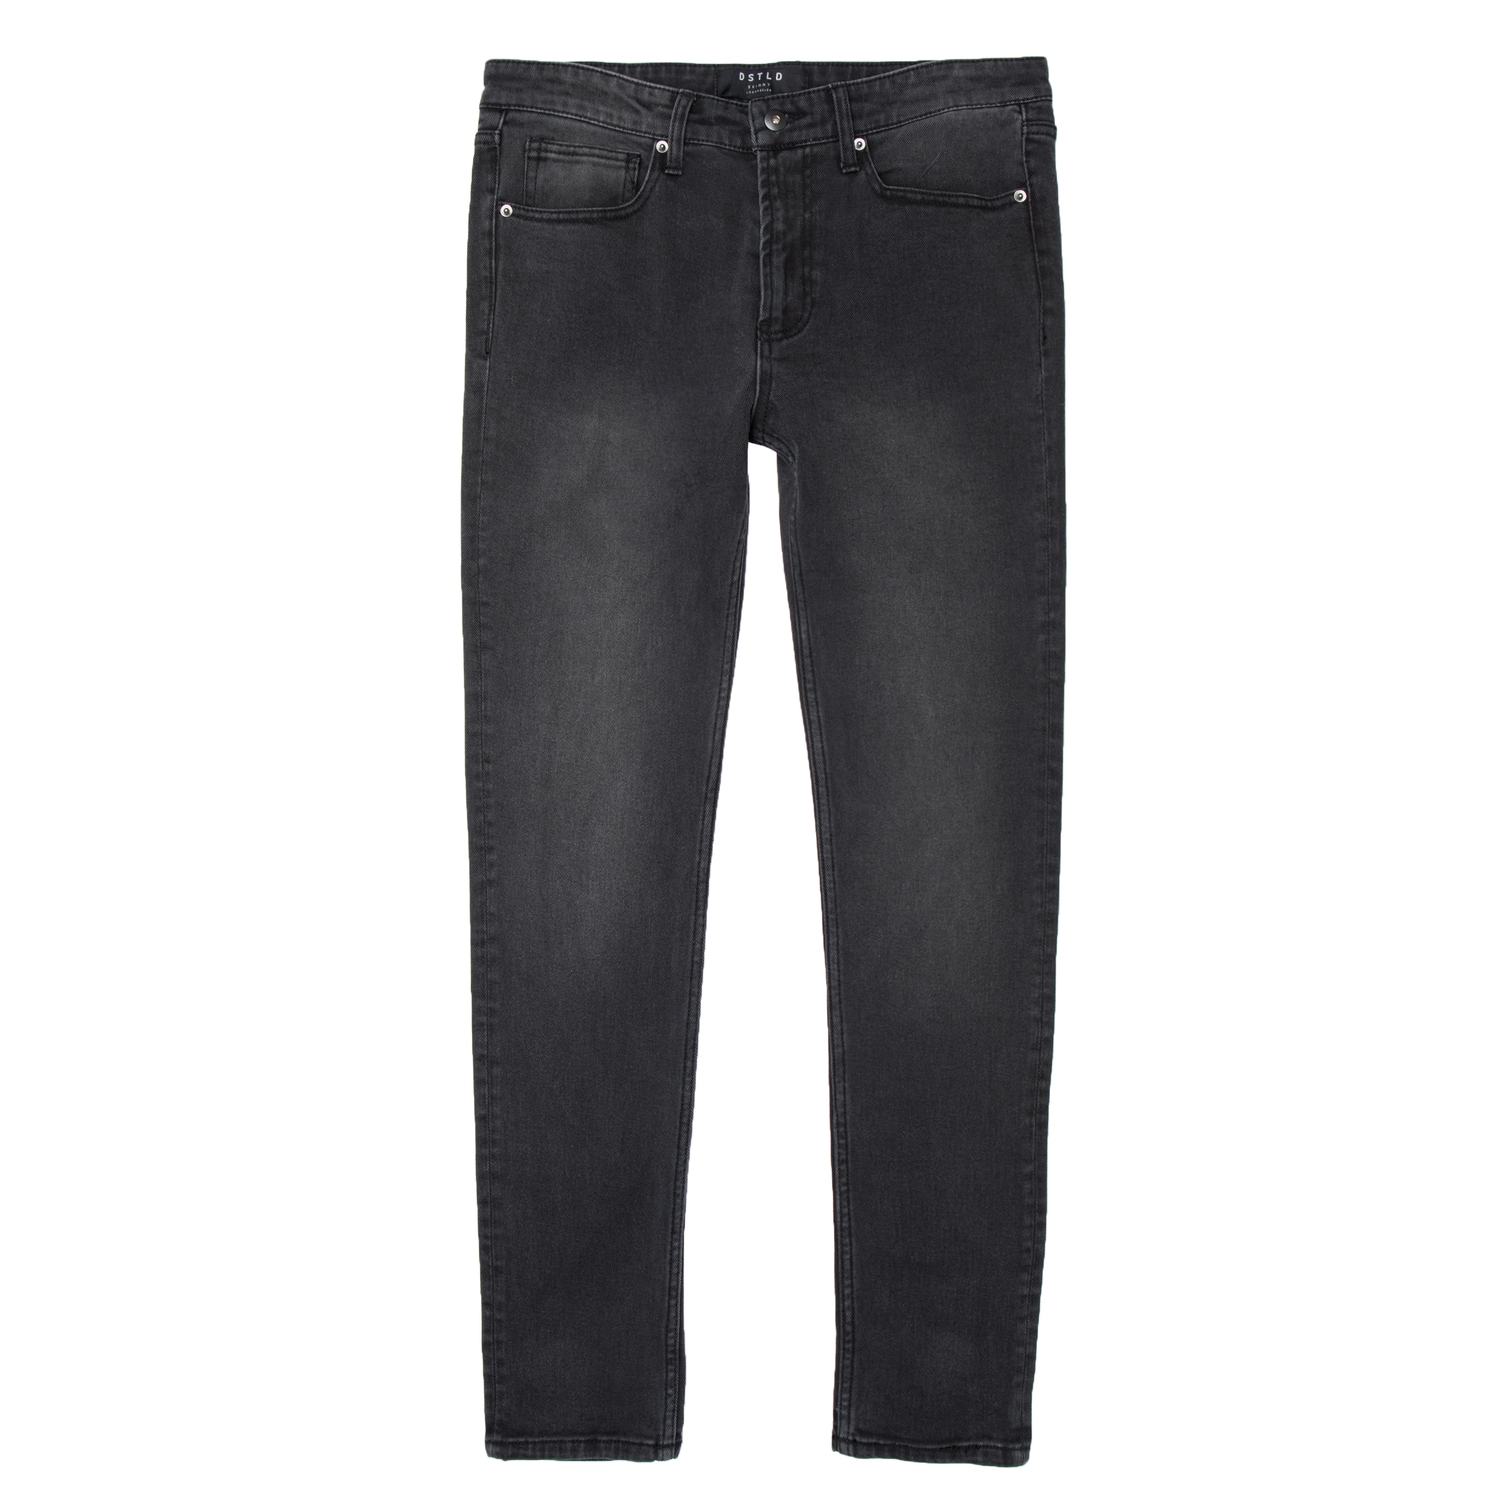 Mens Skinny Jeans In Faded Black $85 | DSTLD